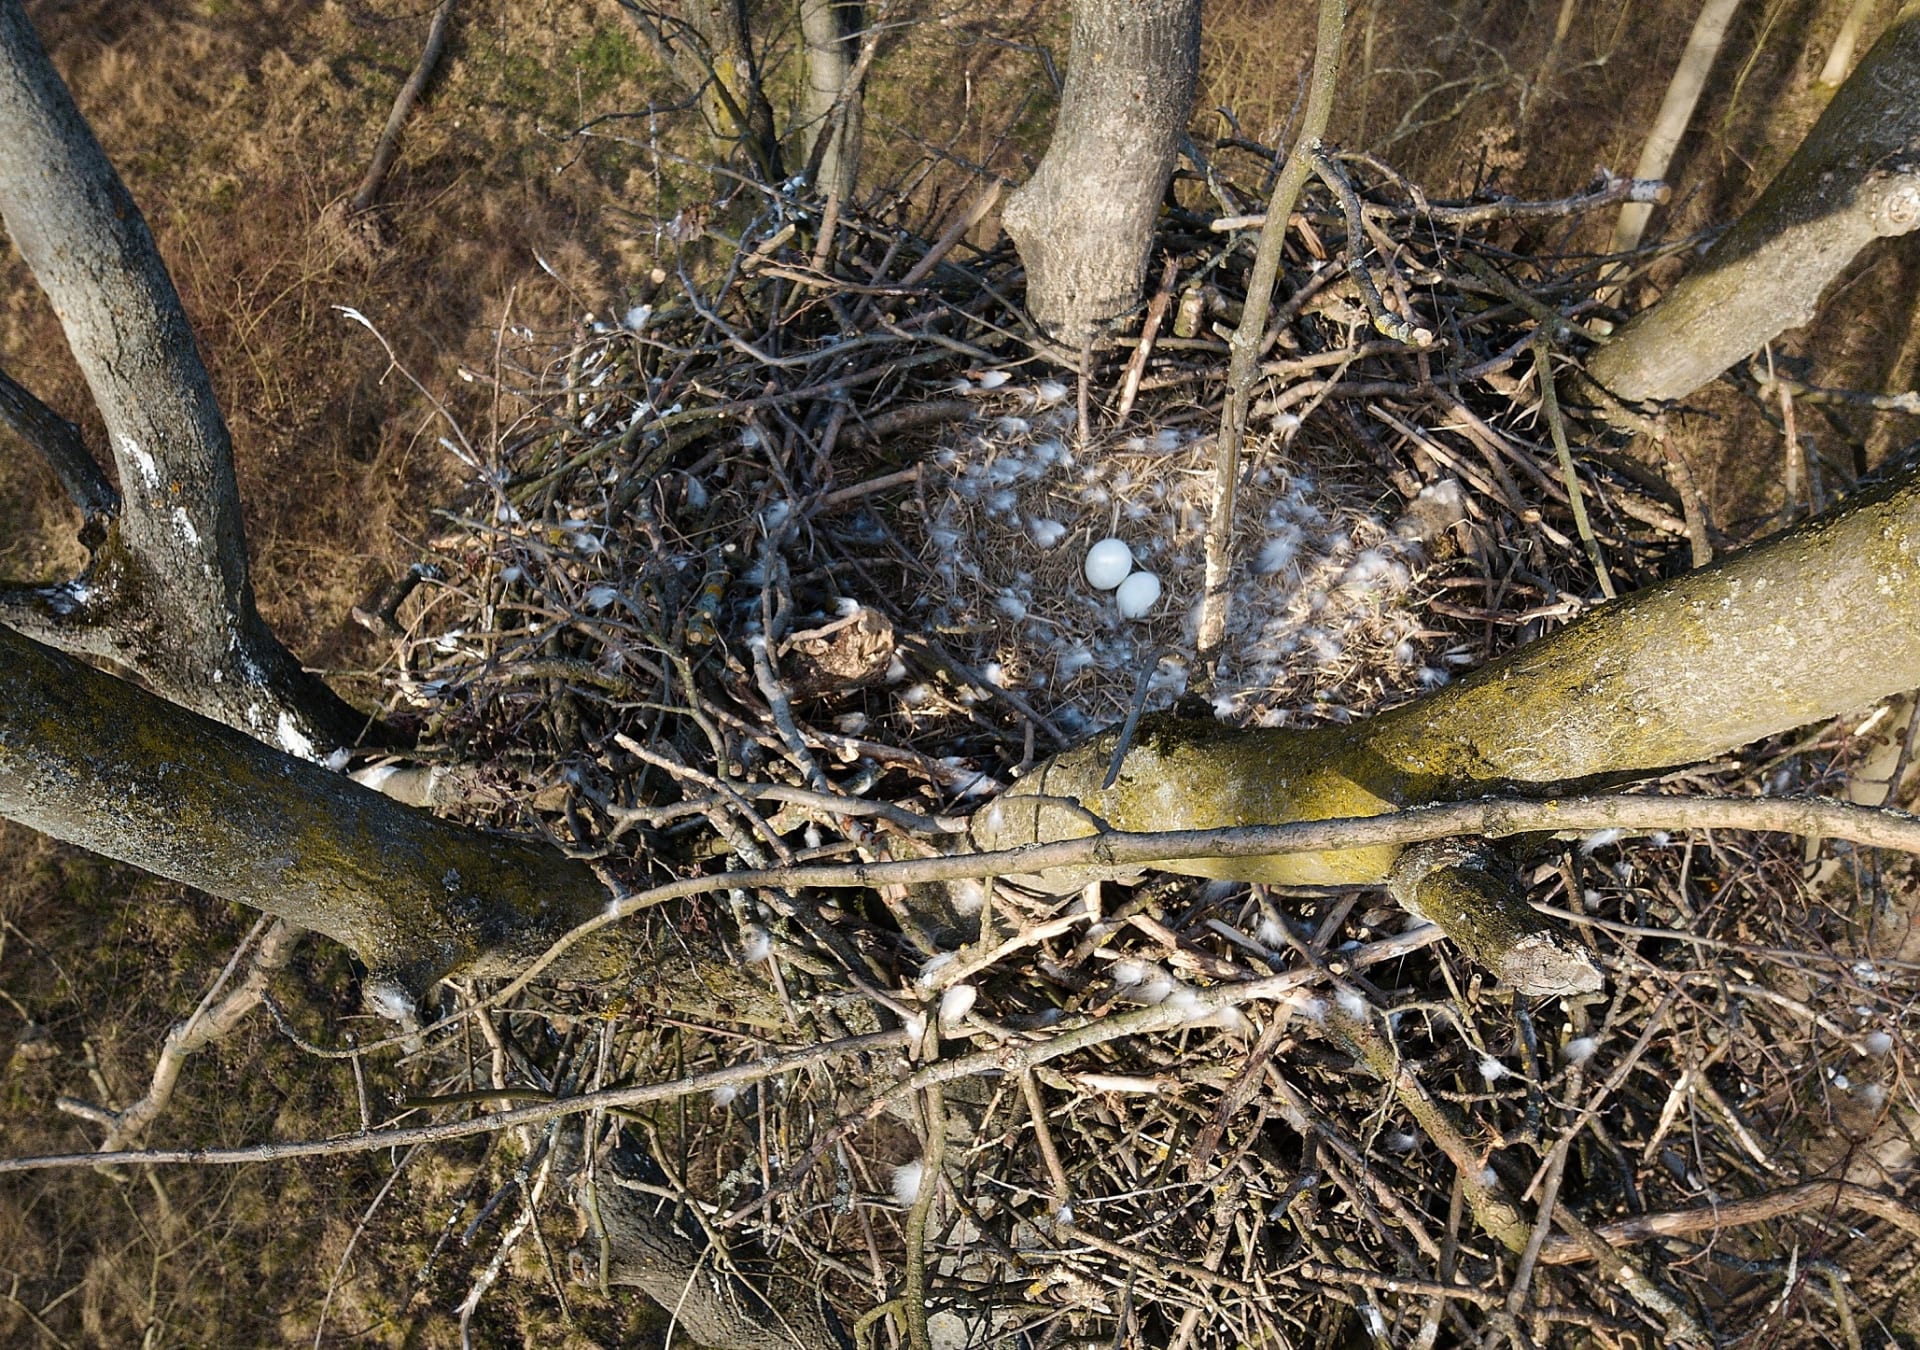 Kontrola hnízda ukázala dvě zastydlá vejce. Foto: Tomáš Bělka/ČSO